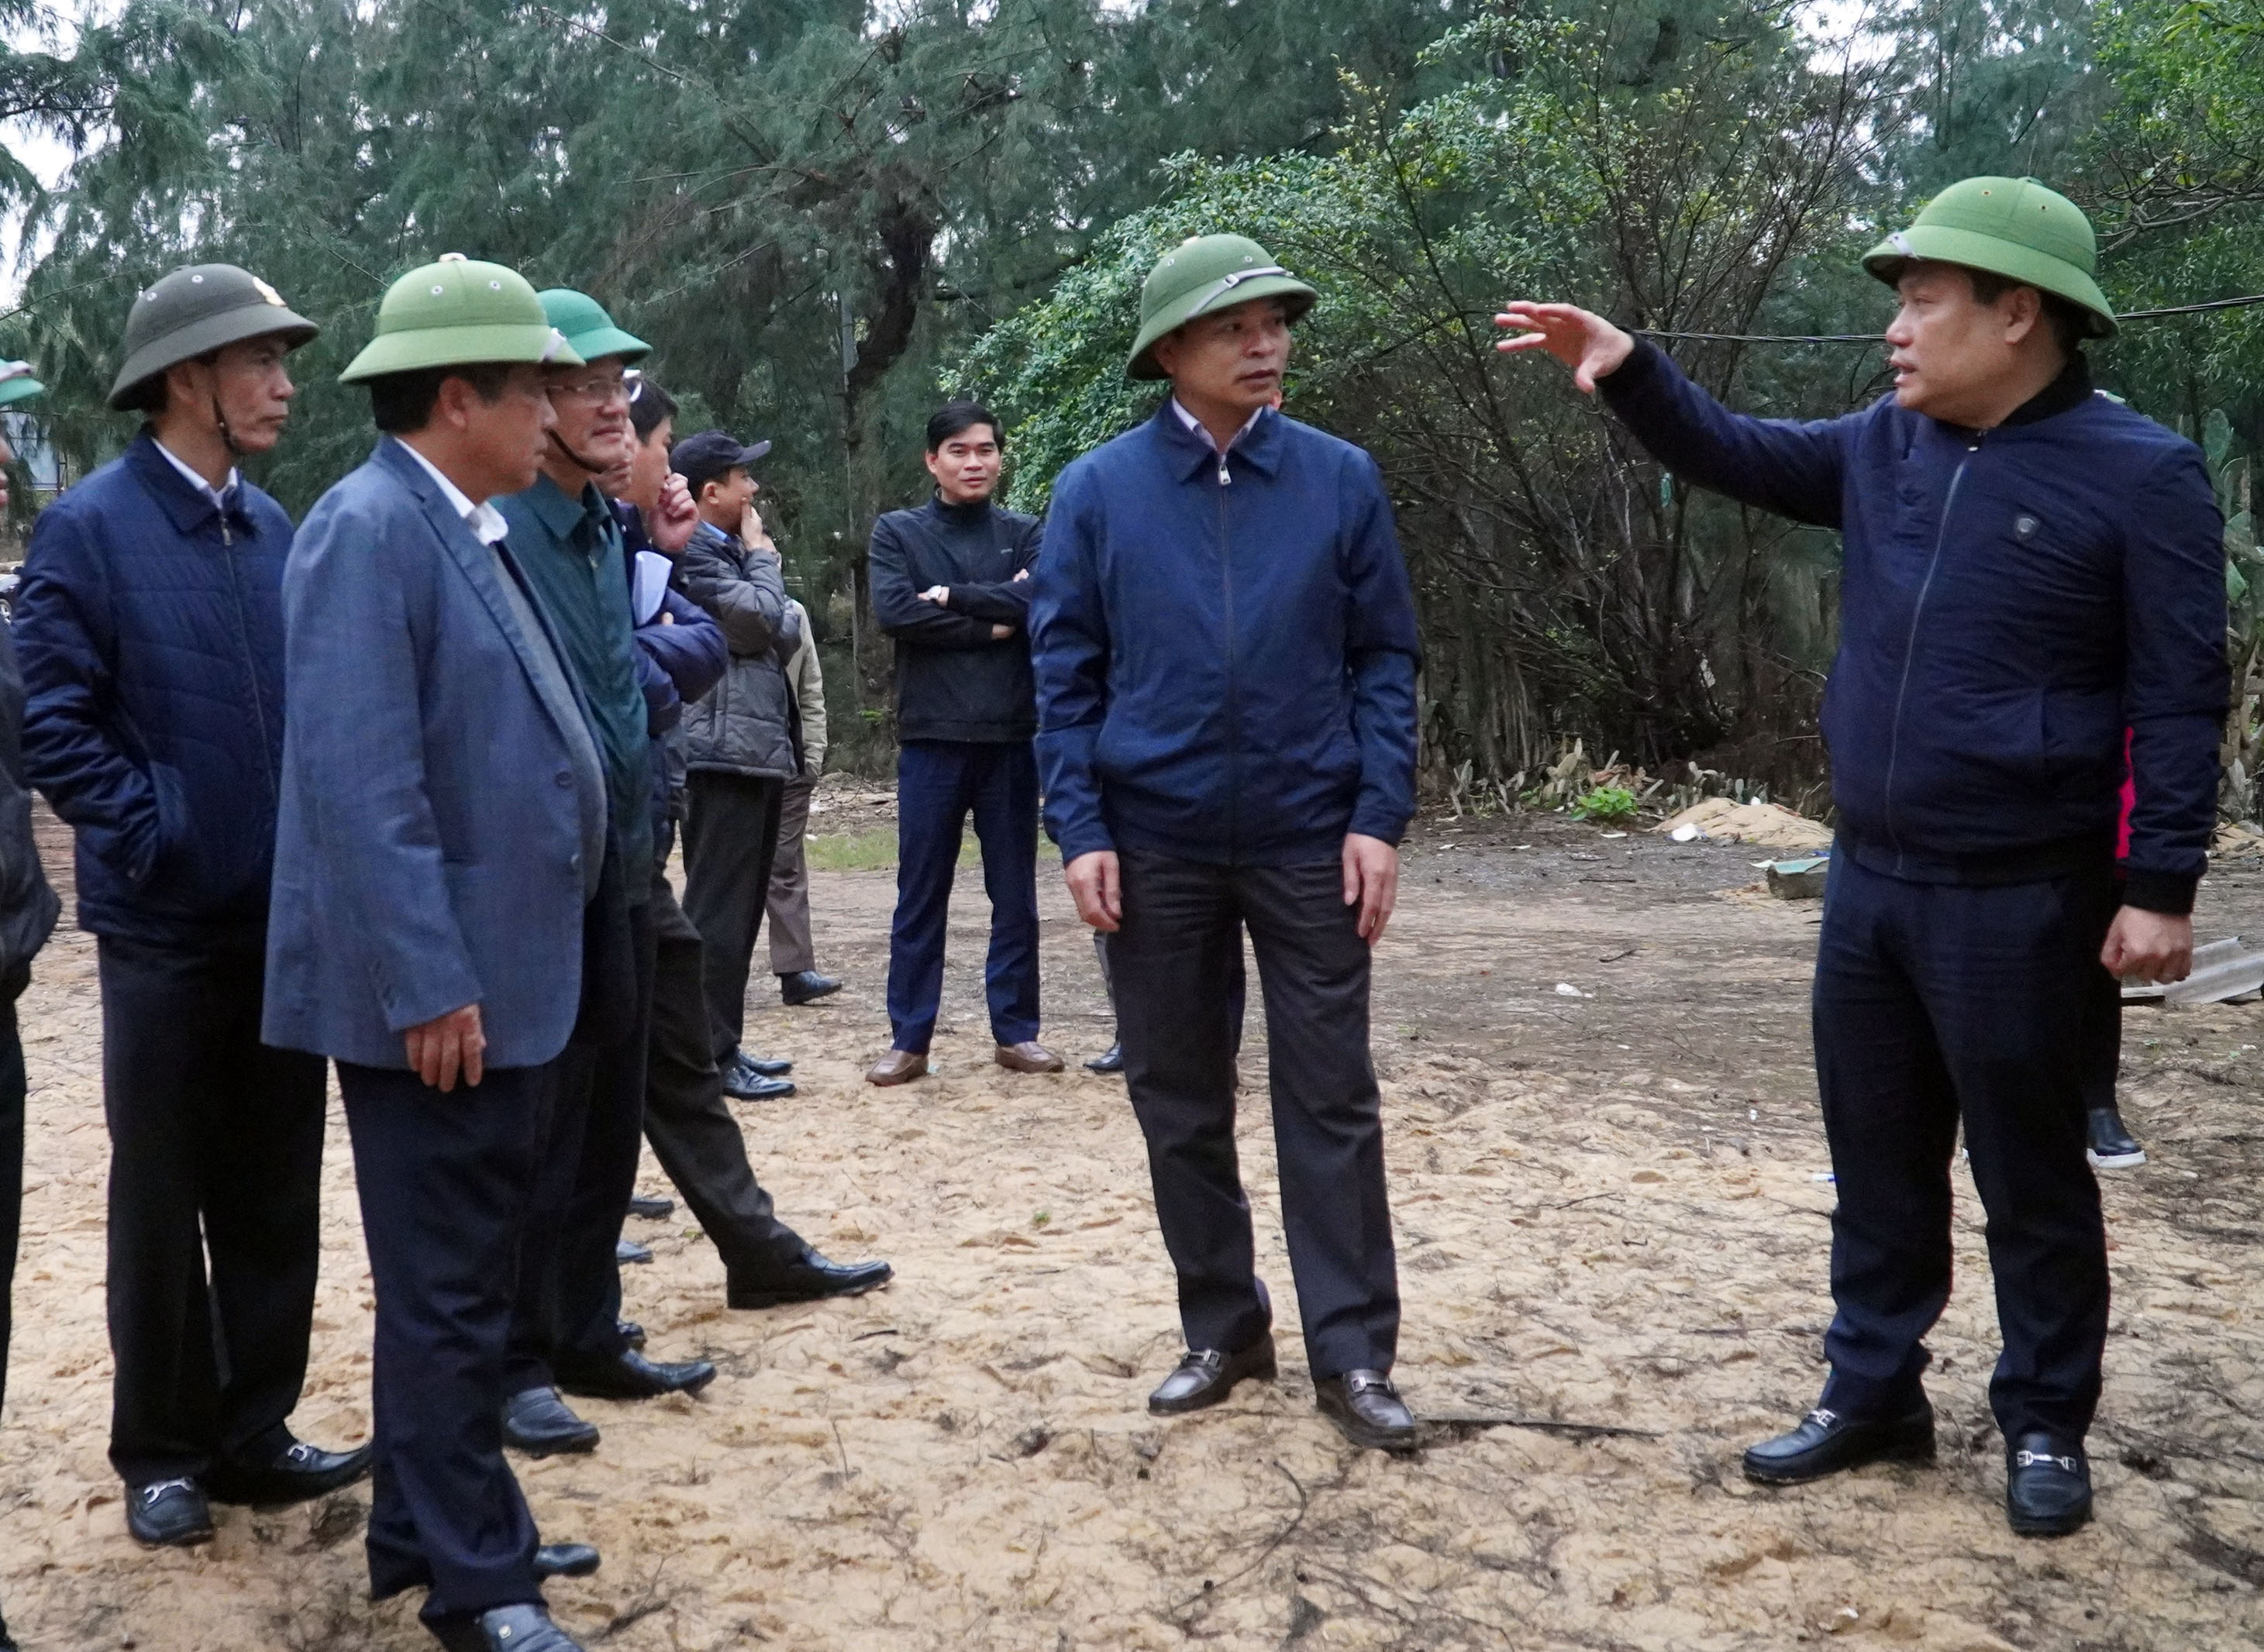 Đồng chí Bí thư Tỉnh ủy và đoàn công tác kiểm tra thực địa các dự án trên địa bàn huyện Quảng Trạch.